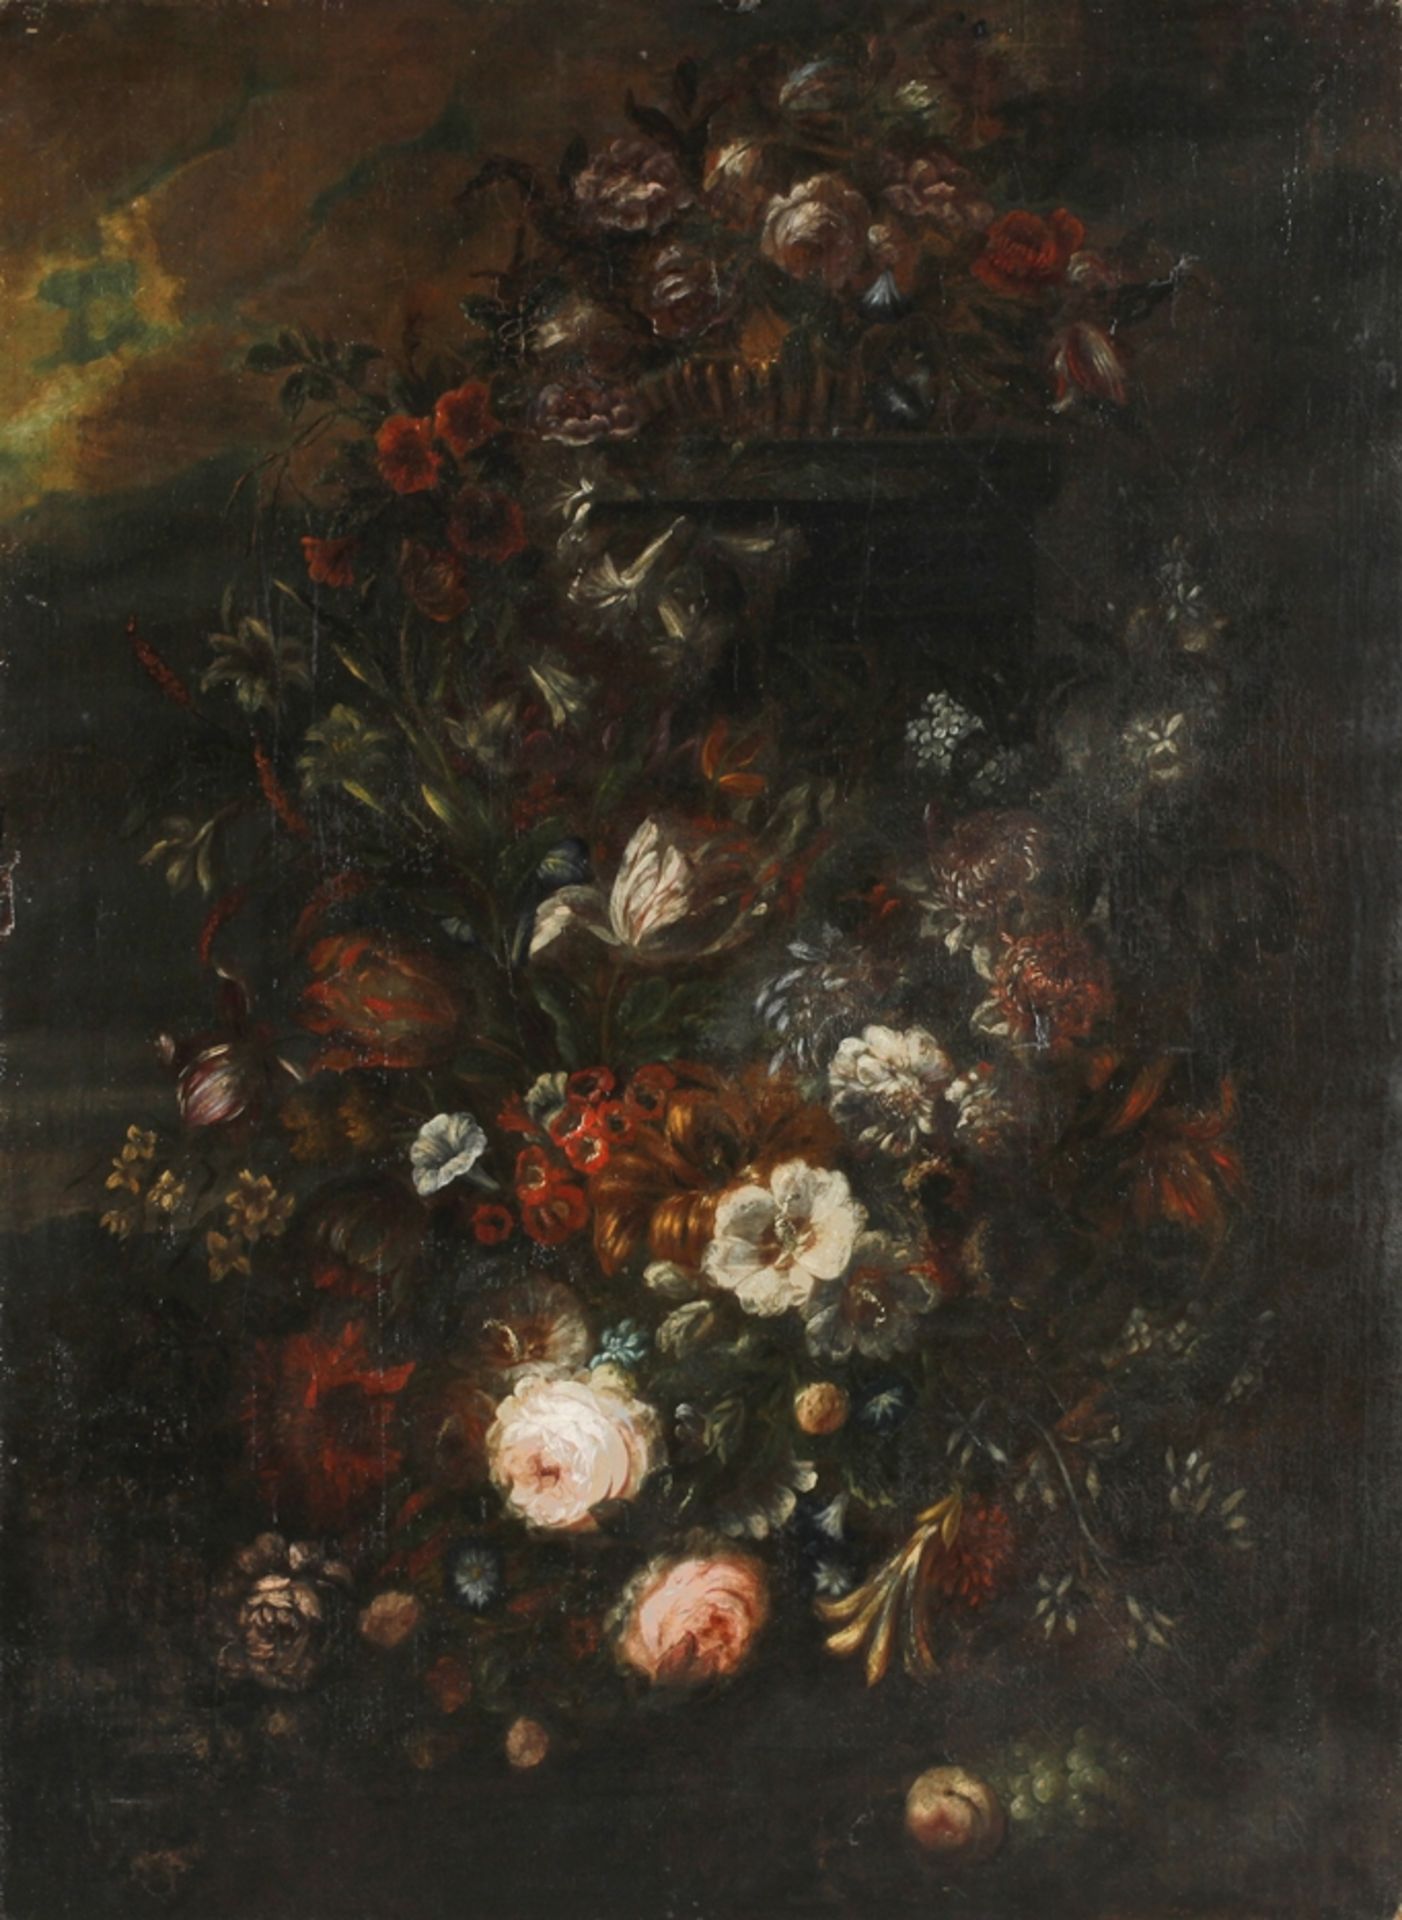 Baroque still life of flowers